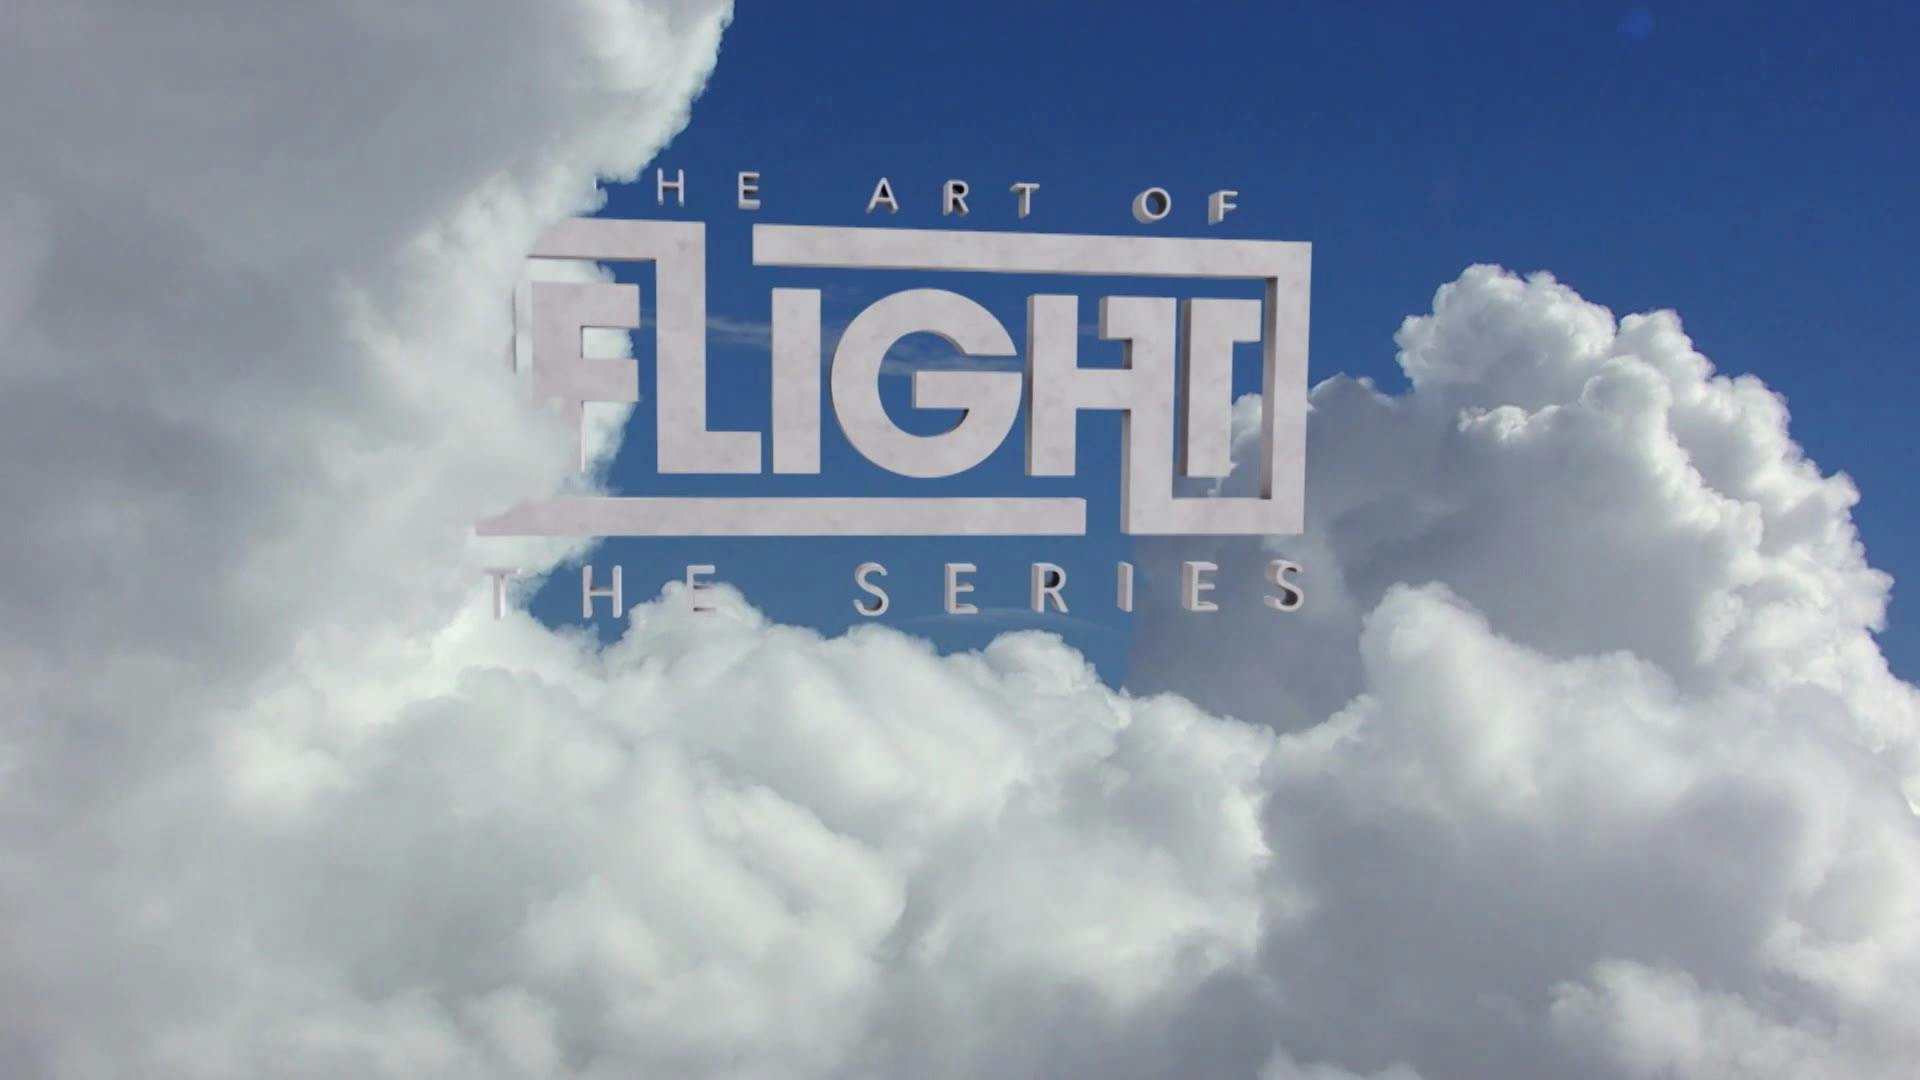 Art of Flight | Trailer